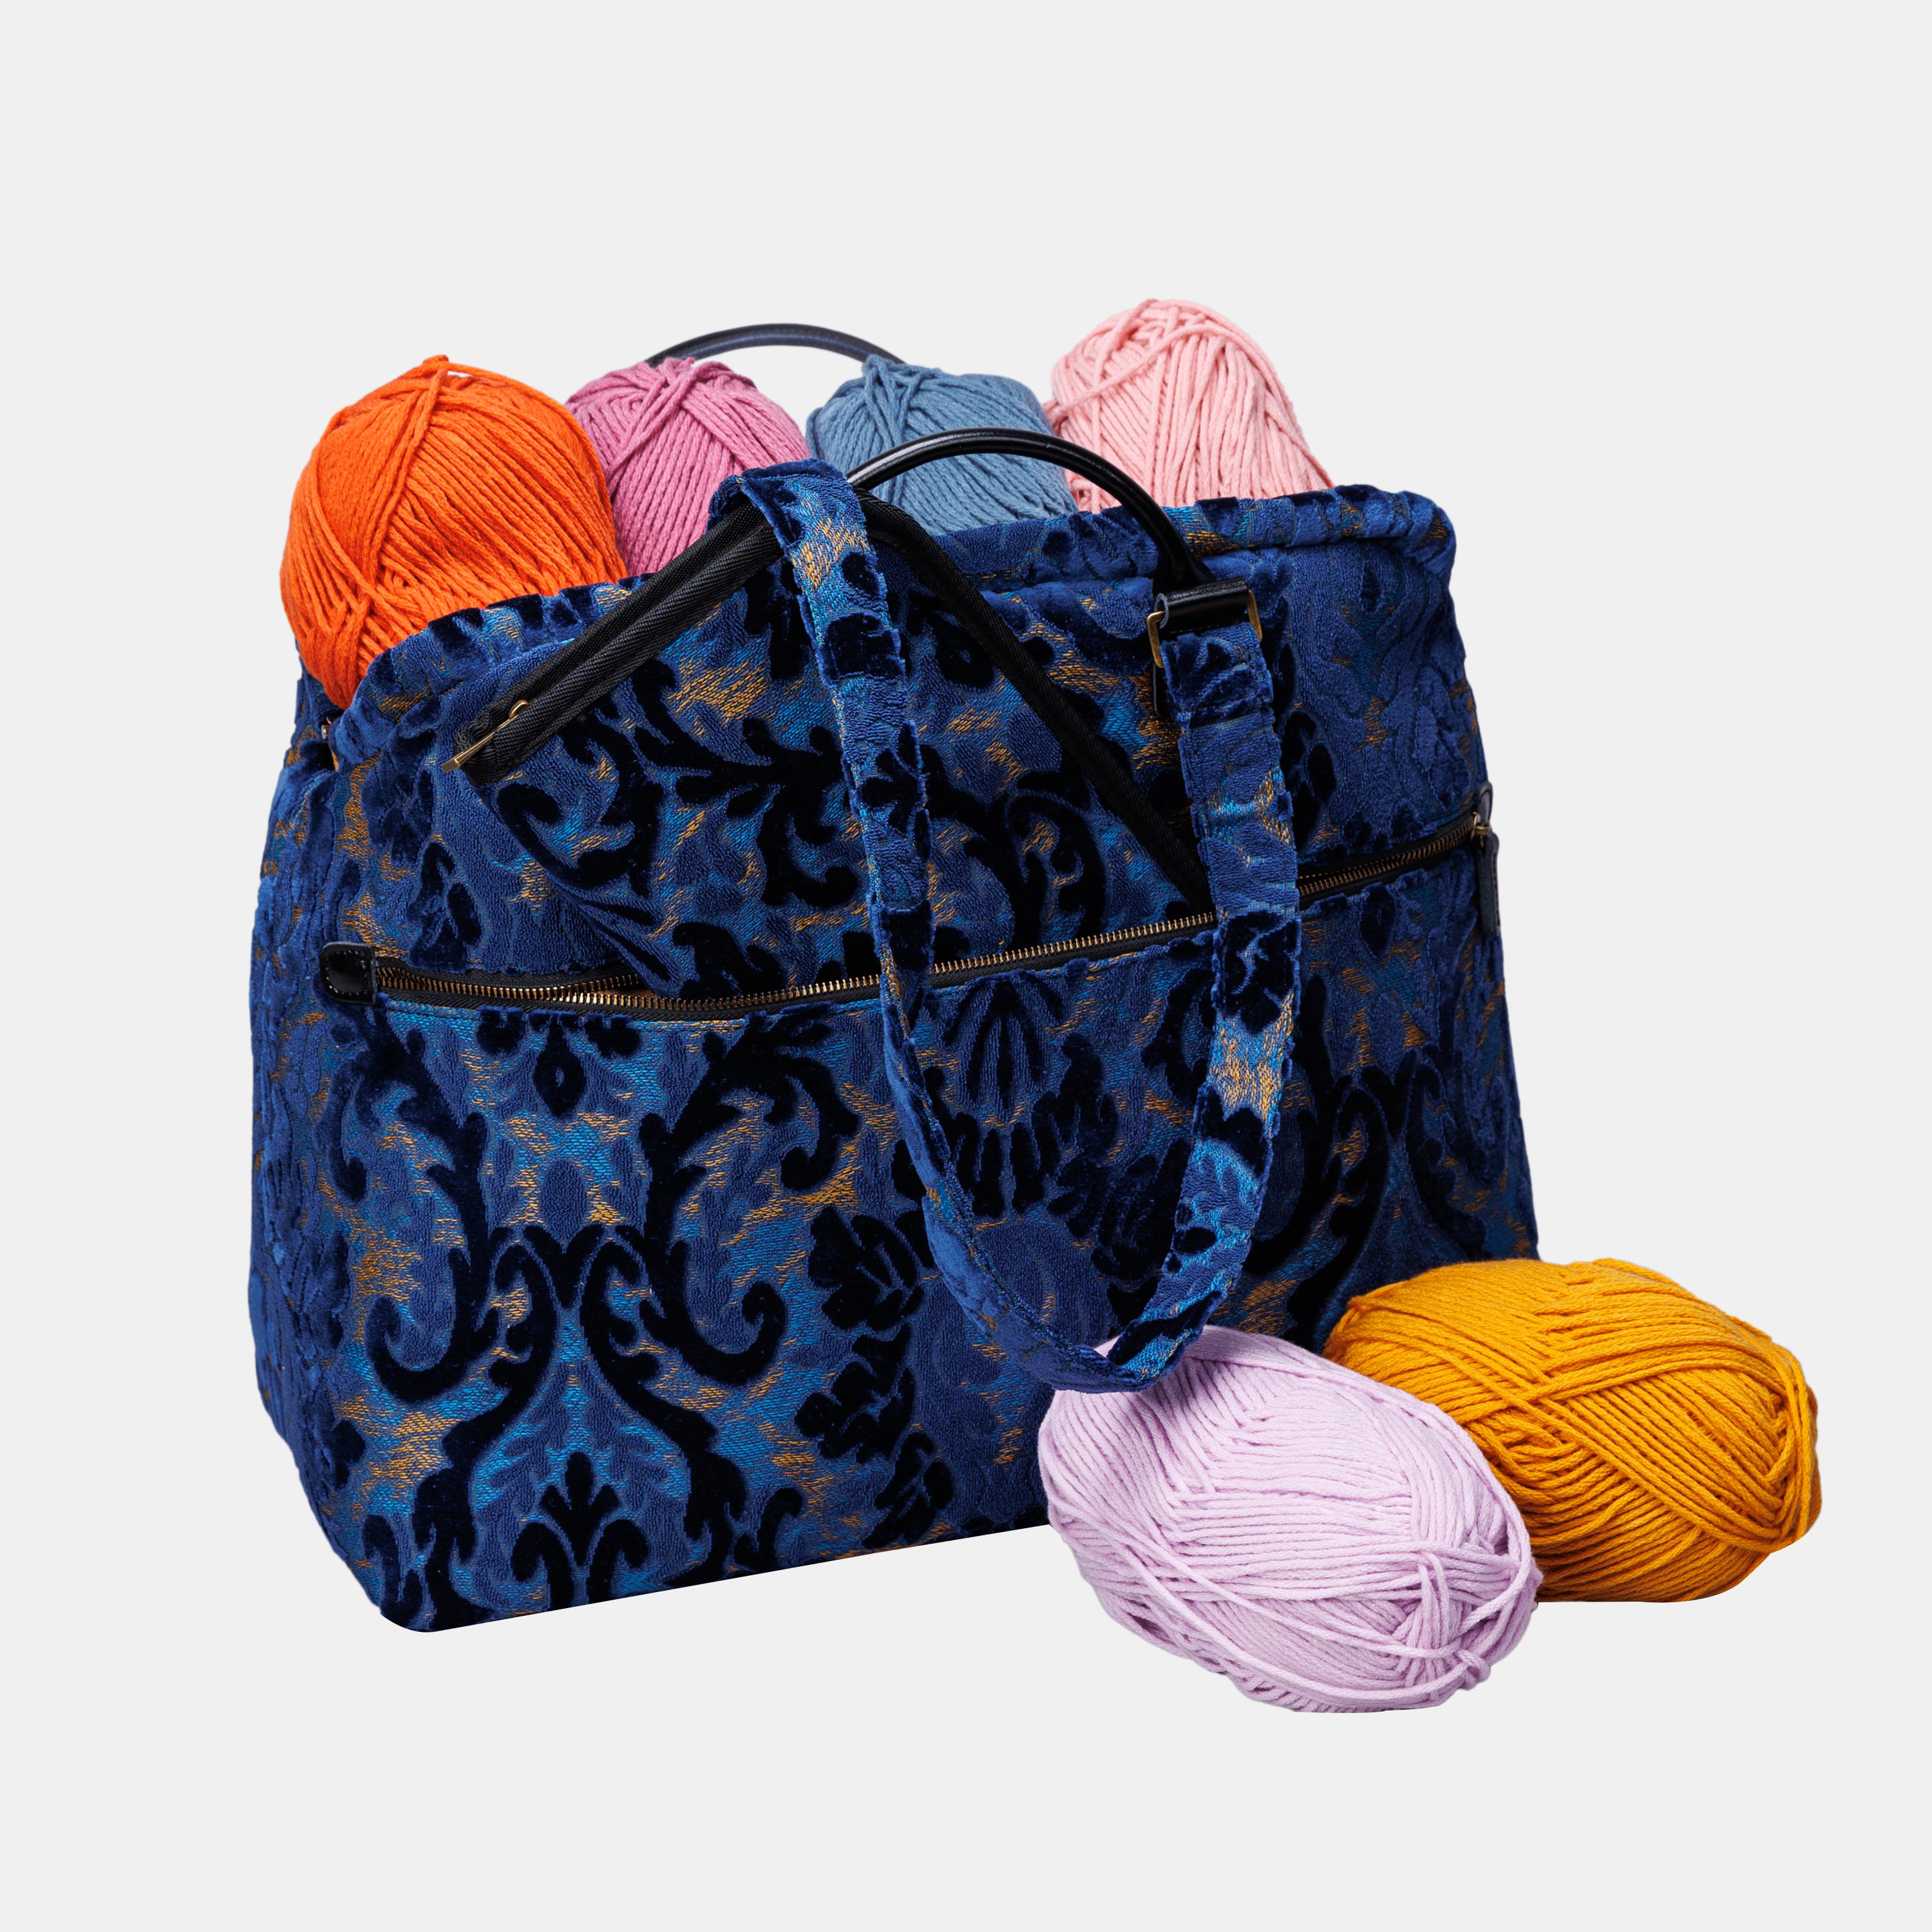 Burnout Velvet Navy Knitting Project Bag  MCW Handmade-4